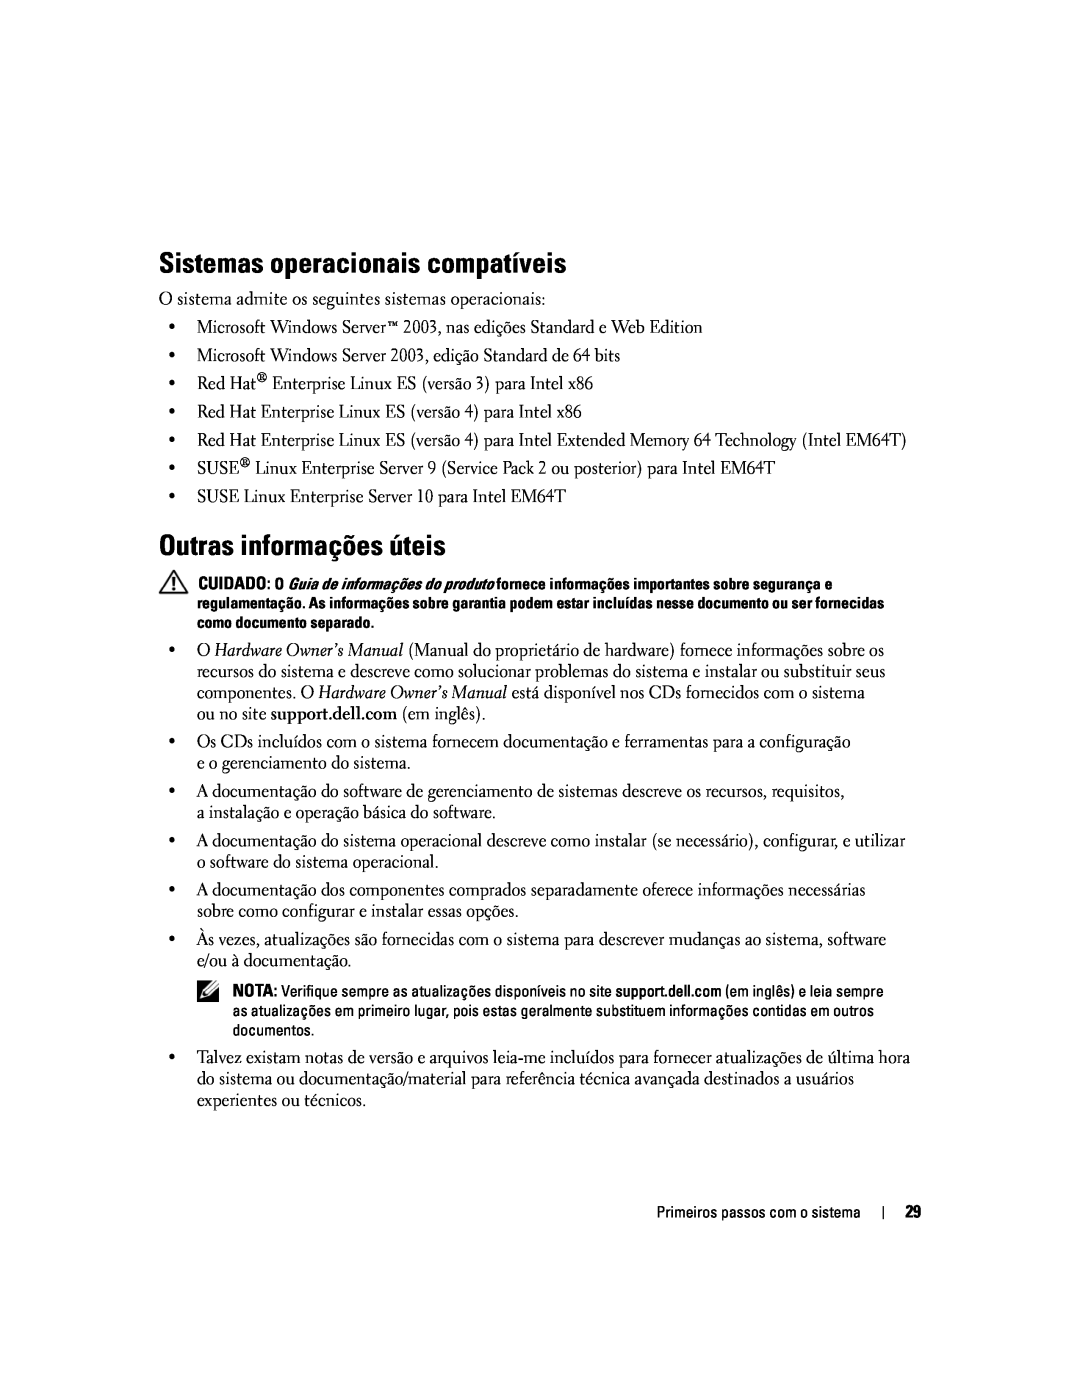 Dell MVT01 manual Sistemas operacionais compatíveis, Outras informações úteis 